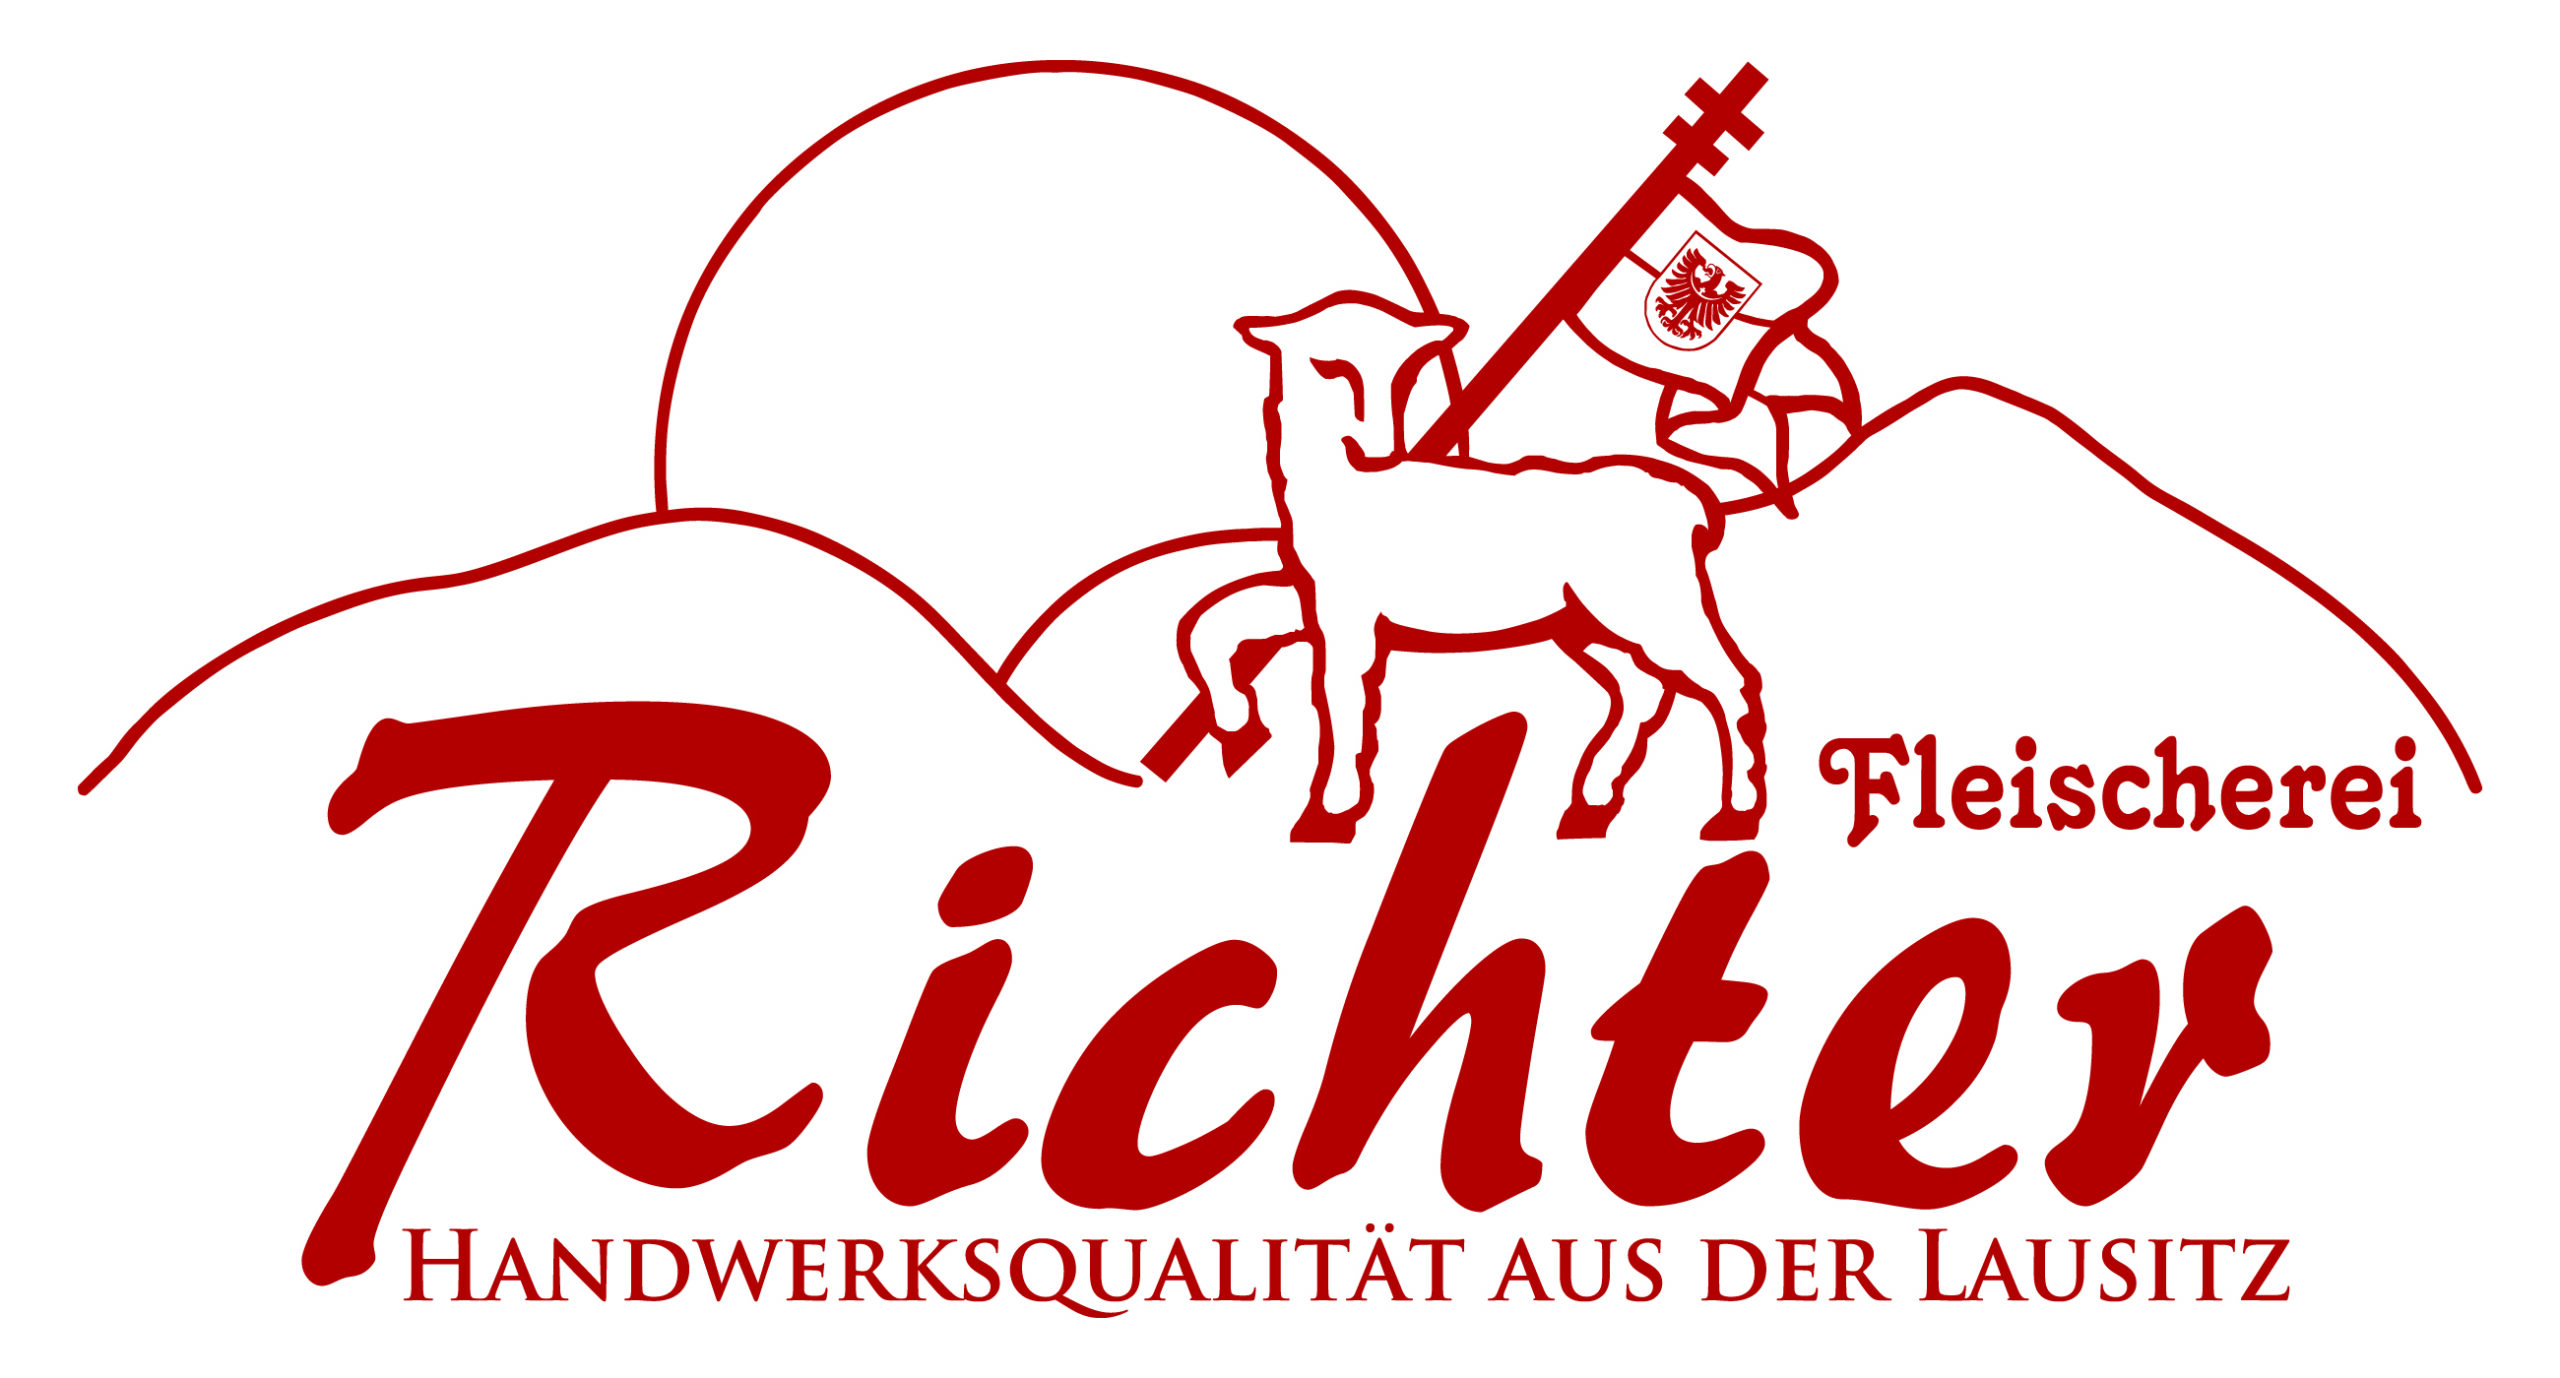 Fleischerei Richter GmbH & Co. KG